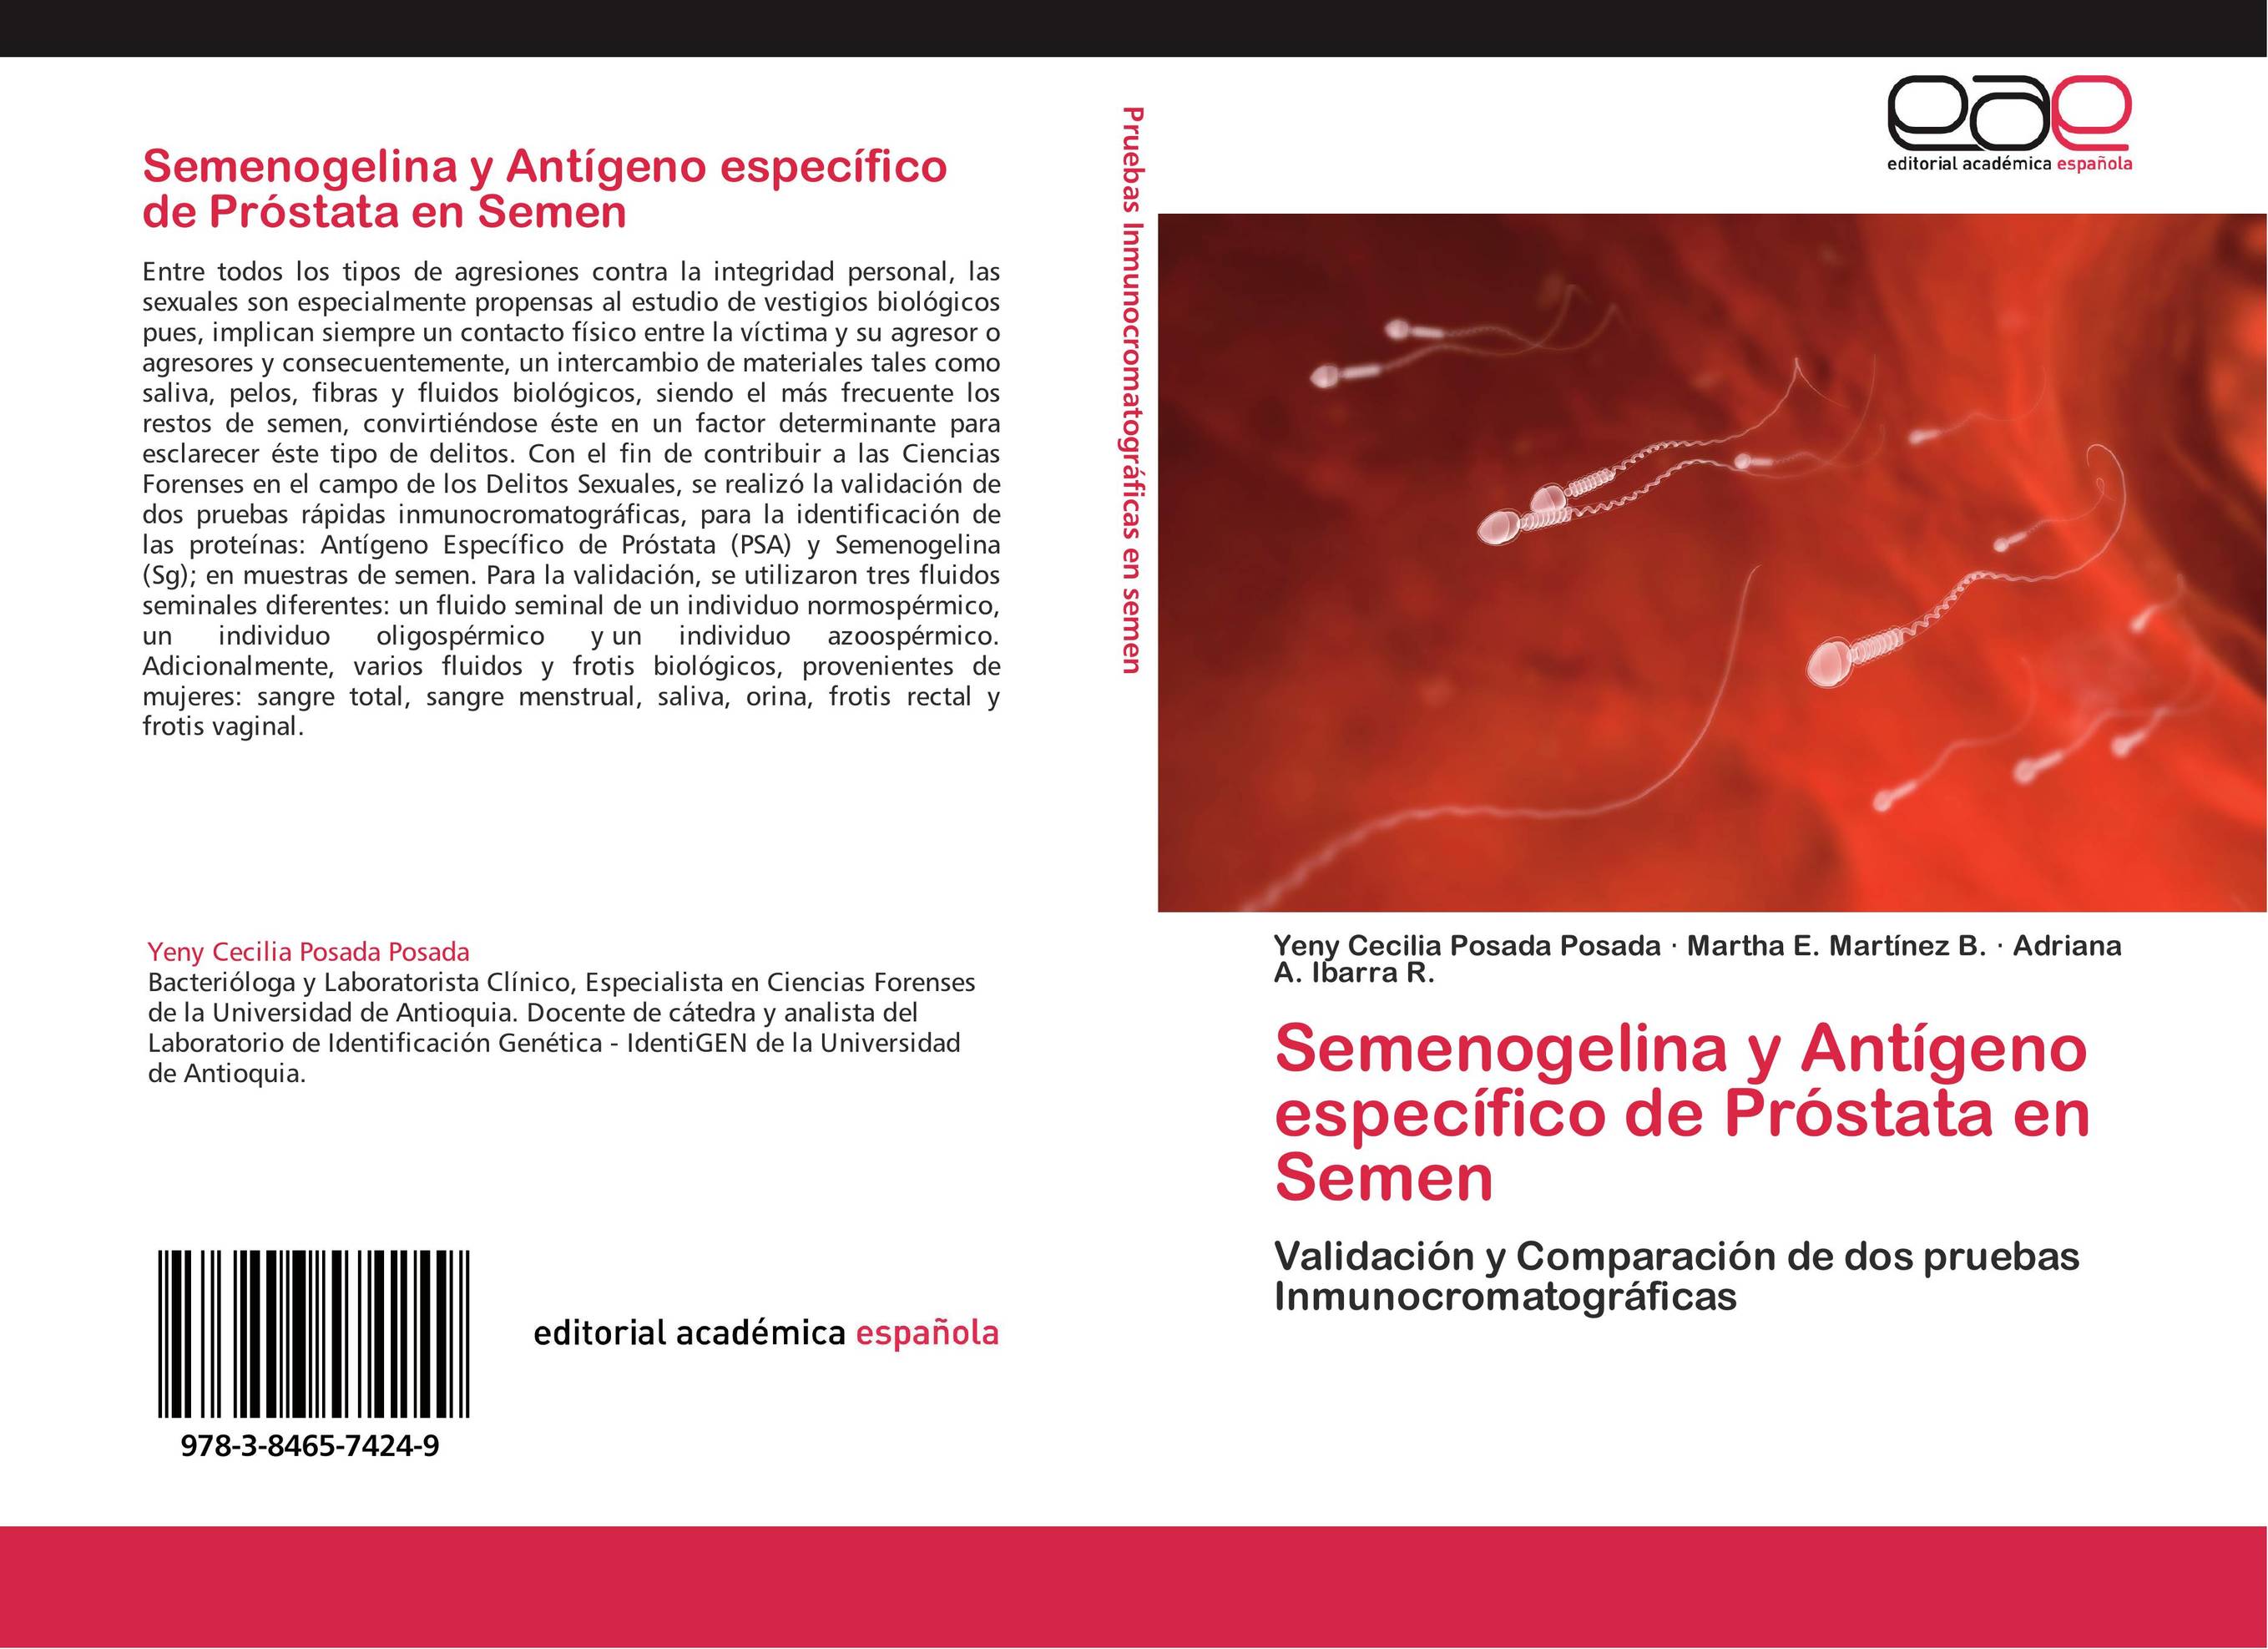 Semenogelina y Antígeno específico de Próstata en Semen